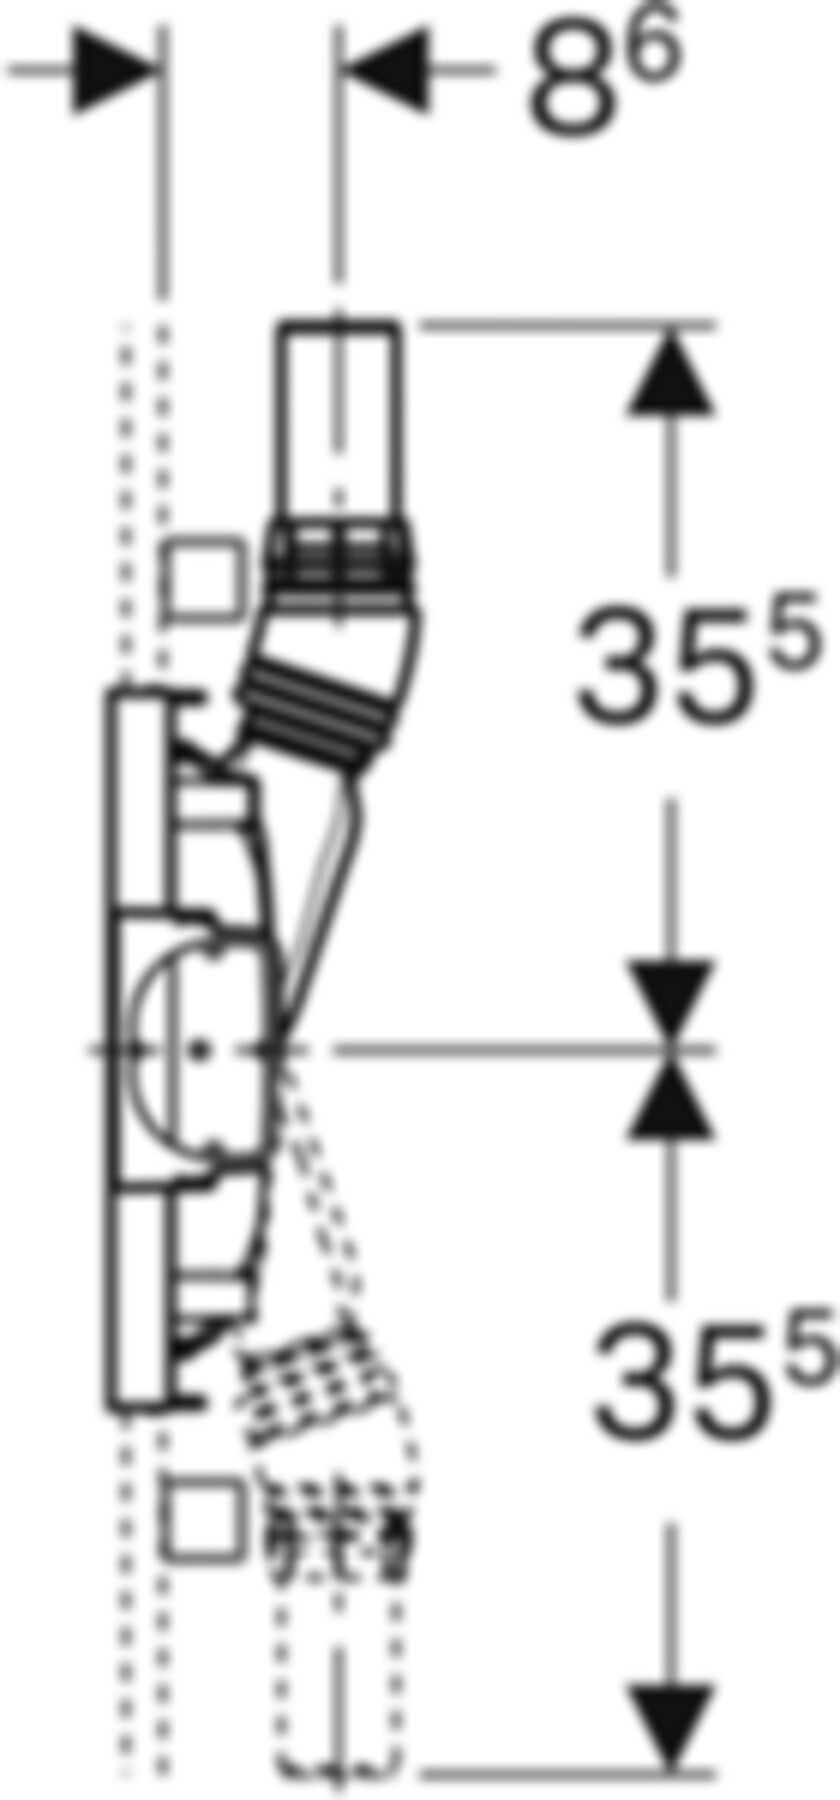 Duschelement mit Wandablauf 111.585.00.1 Typ 130 40mm UP-Armatur,niedrige Bauhöhe - Geberit-Duofix